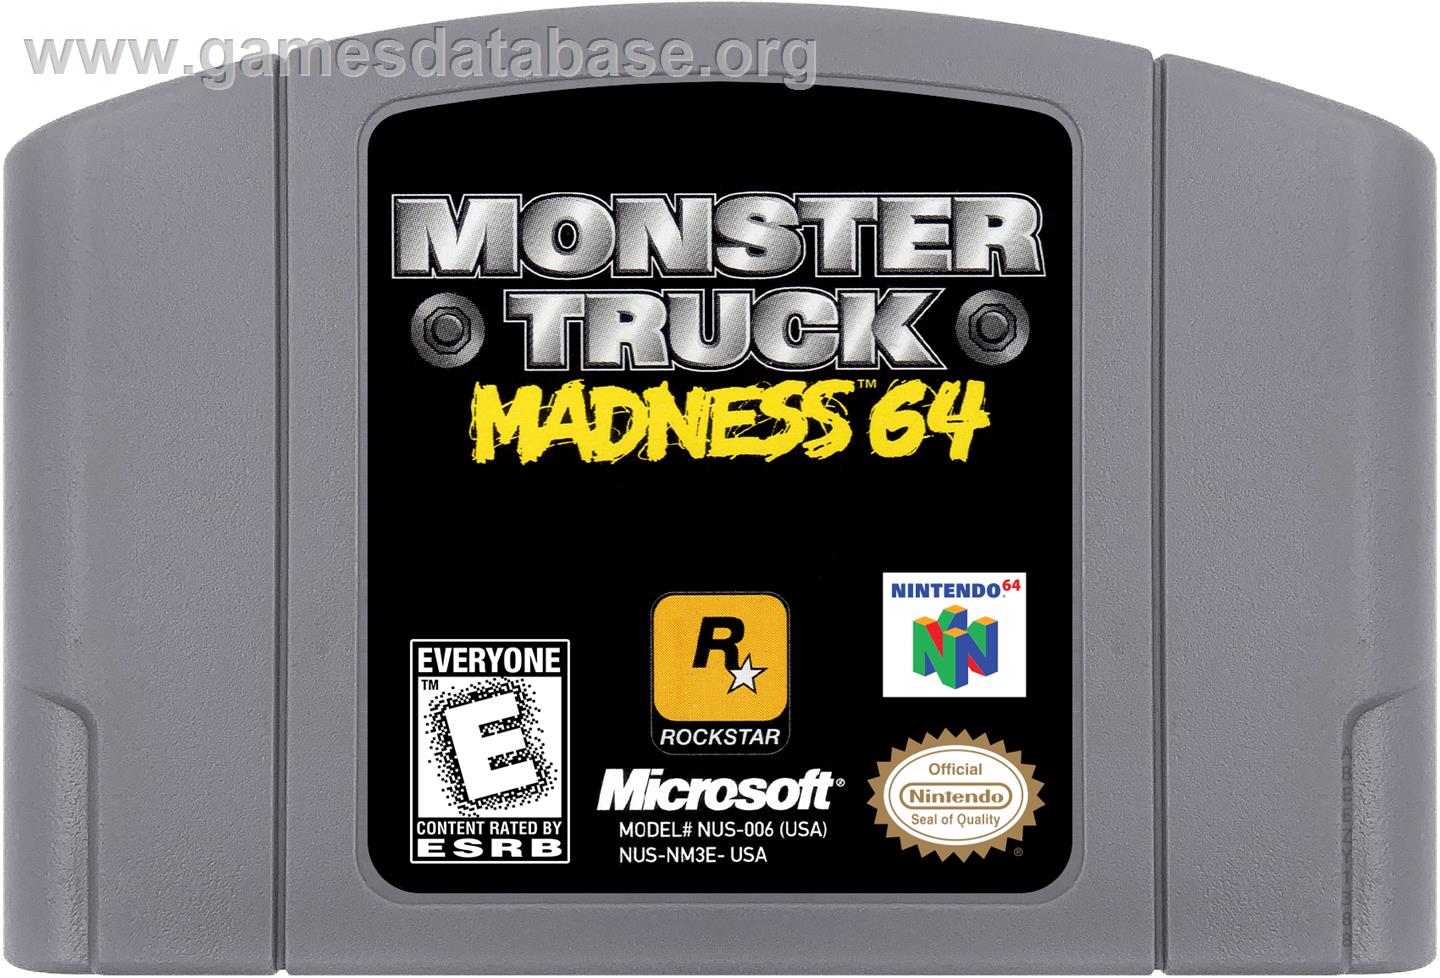 Monster Truck Madness 64 - Nintendo N64 - Artwork - Cartridge